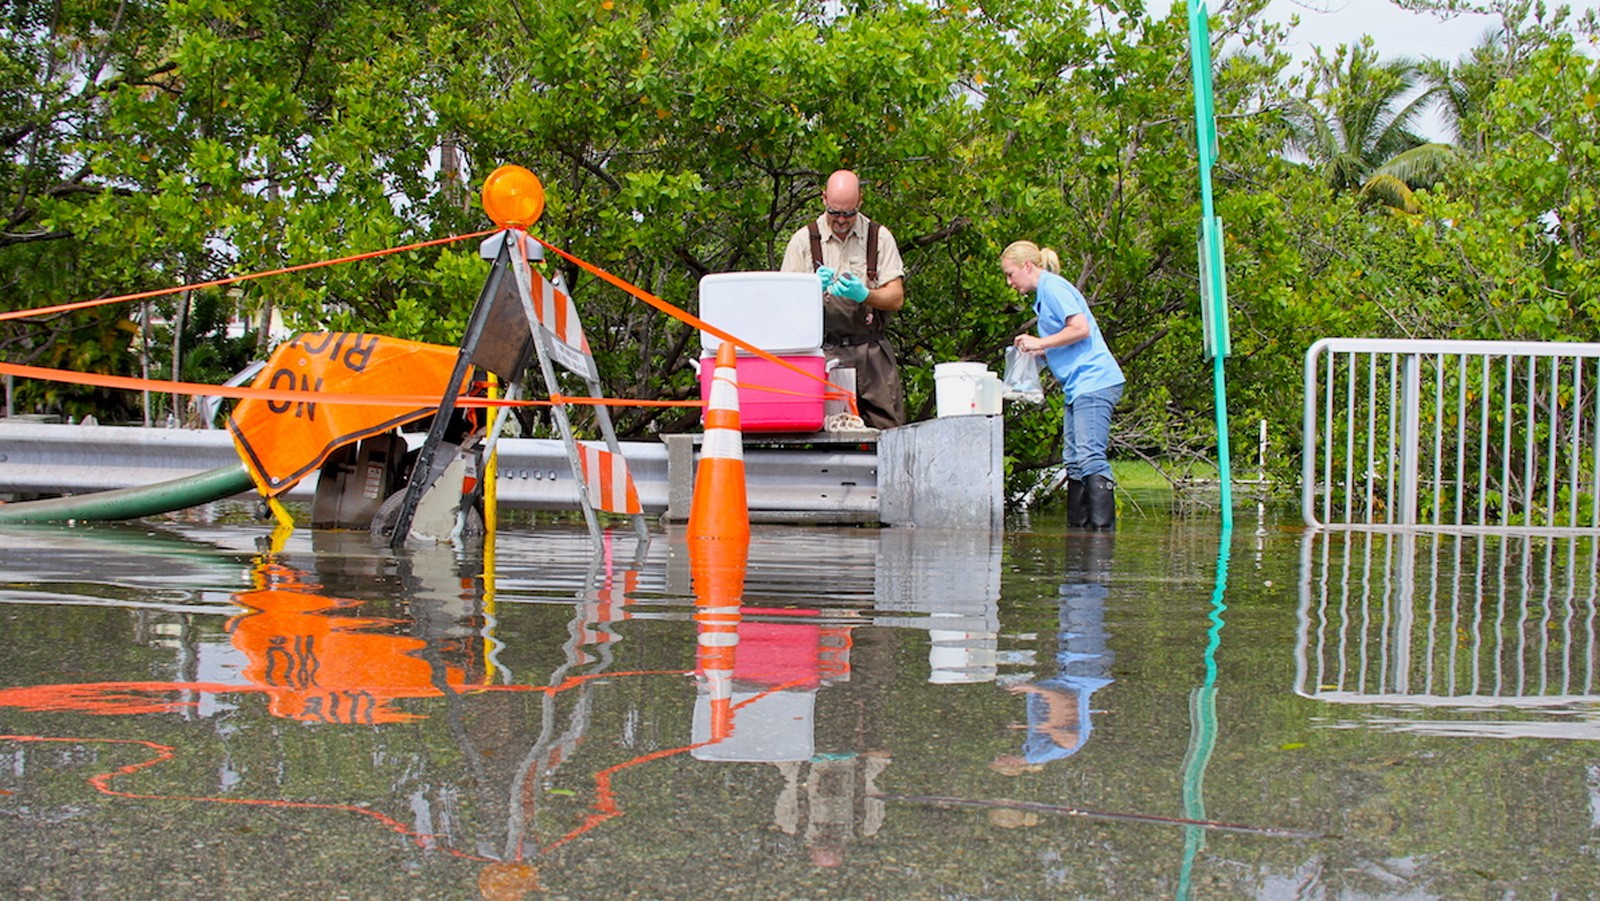 Científicos de la FAU y la AOML recogen muestras de agua en un lugar de bombeo a lo largo de Indian Creek Dr. Crédito de la imagen: NOAA